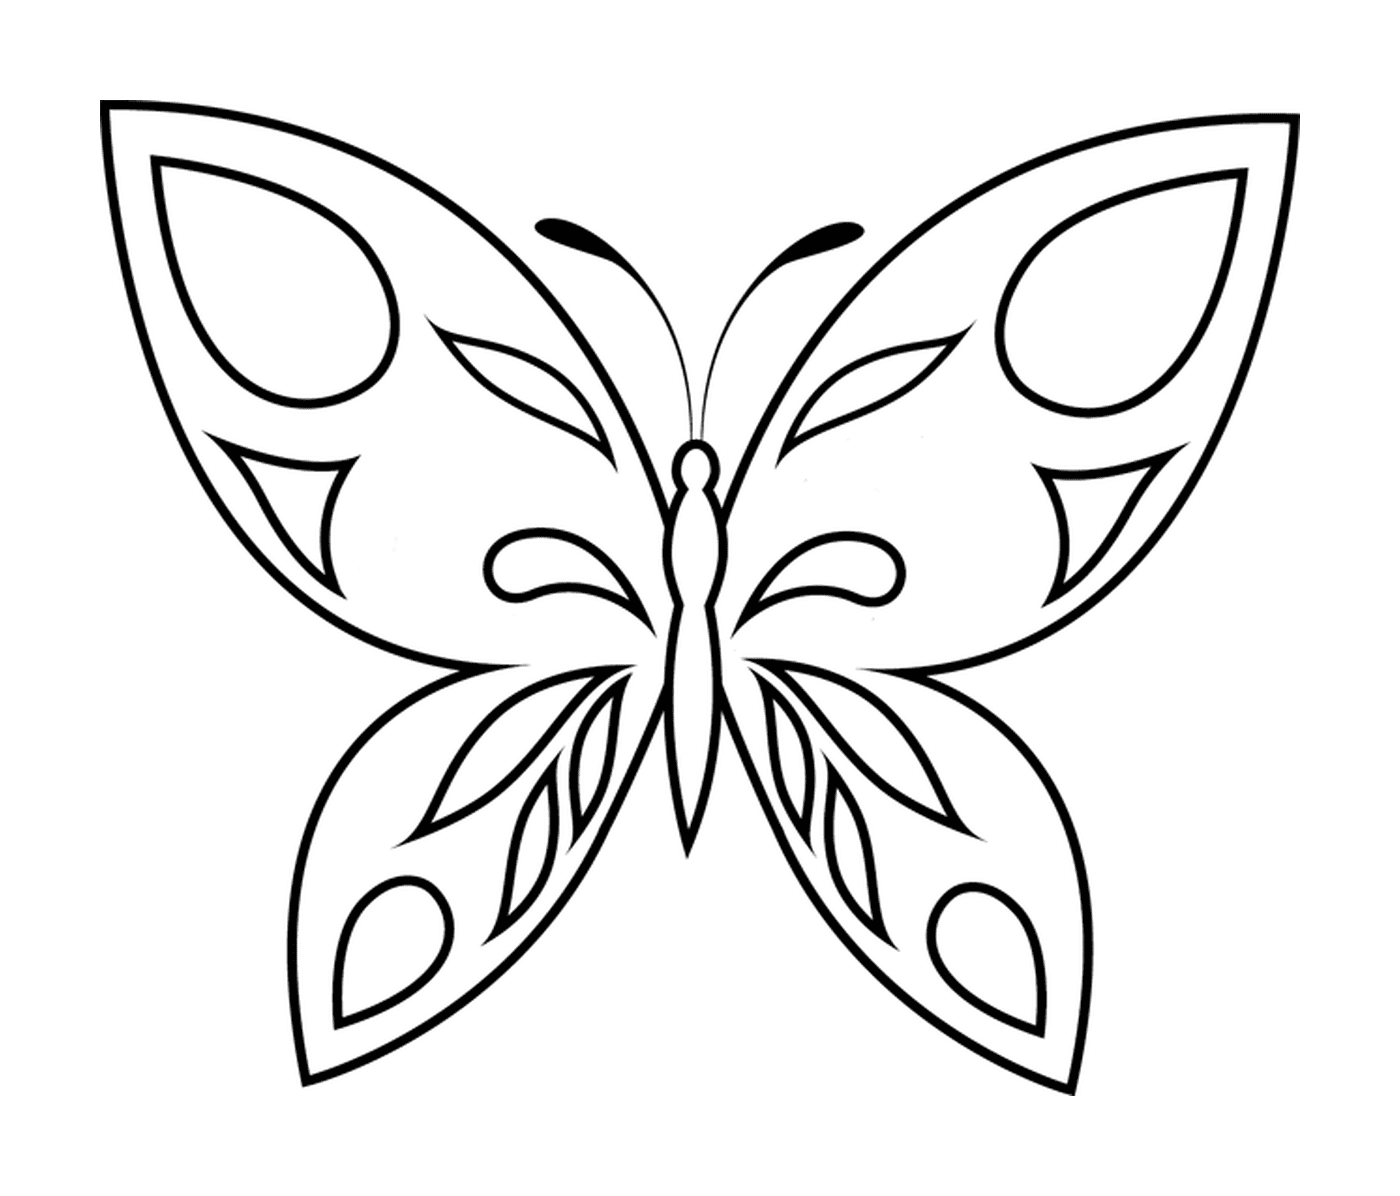  Delicia de mariposa con alas desplegadas 